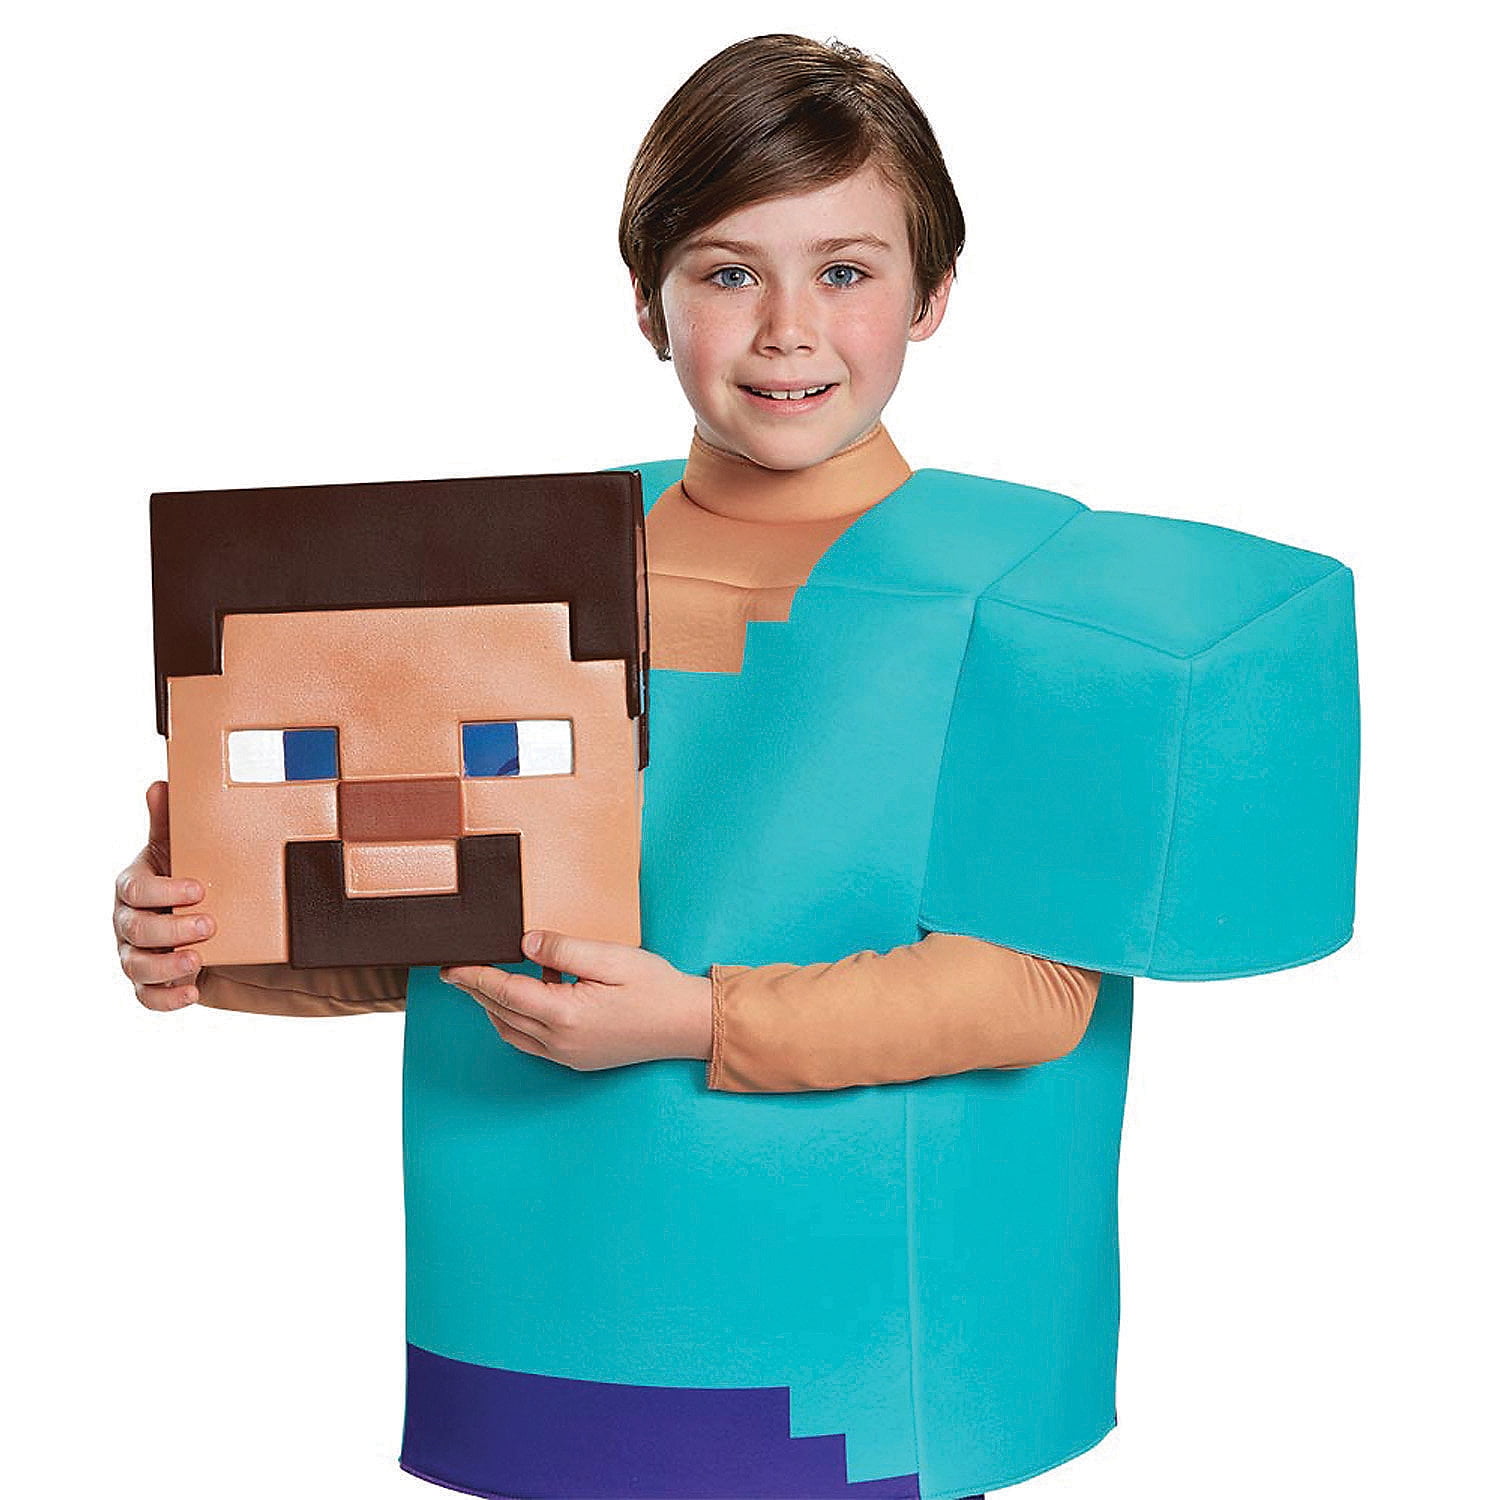  Steve Classic Minecraft Costume, Multicolor, Small (4